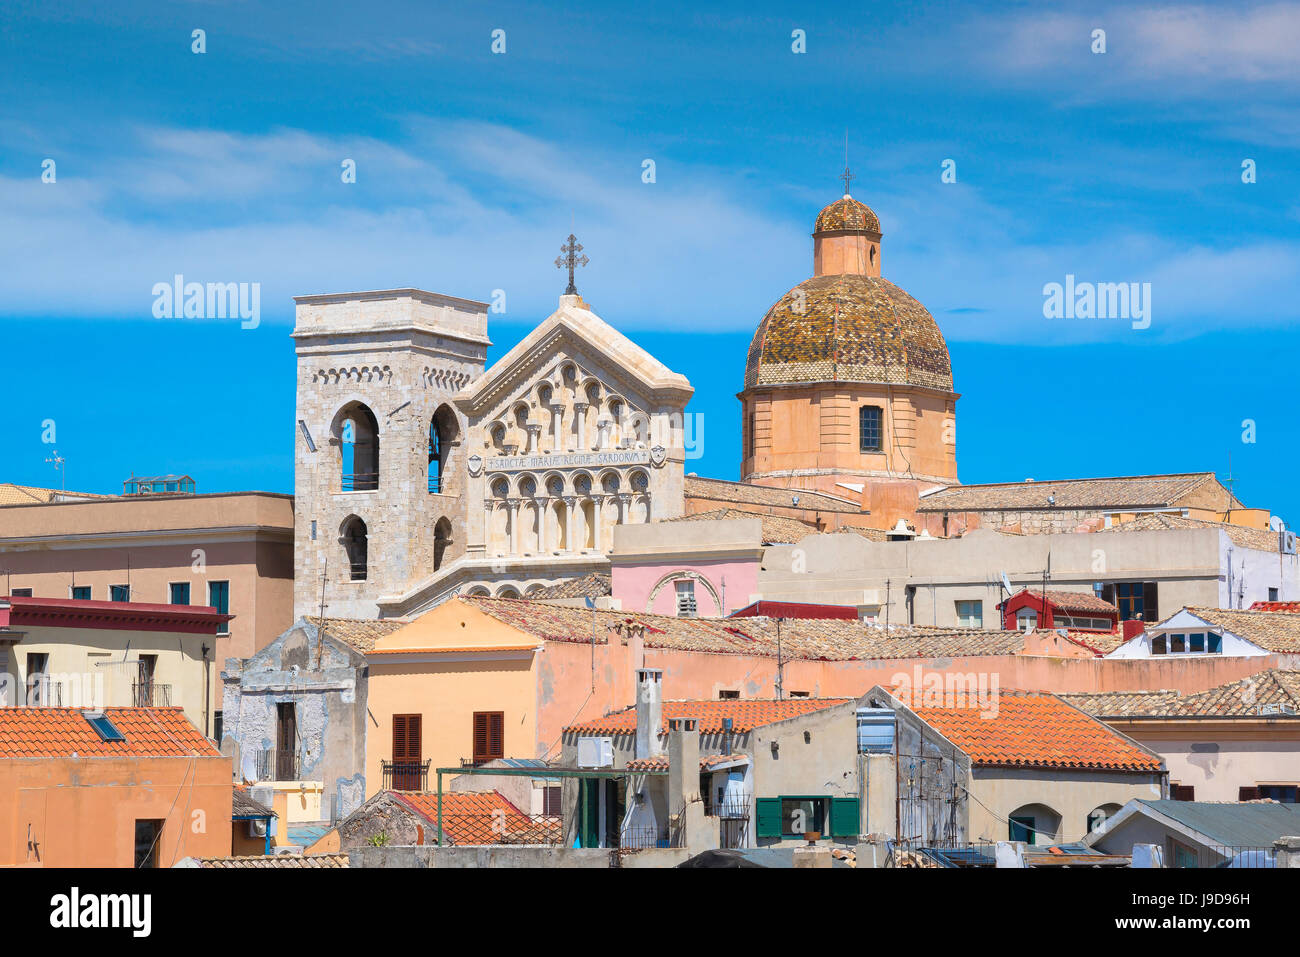 Cagliari Castello, skyline del vecchio quartiere di Castello di Cagliari che mostra il campanile della cattedrale, davanti a capanna e cupola sopra il roofline, SARDEGNA. Foto Stock